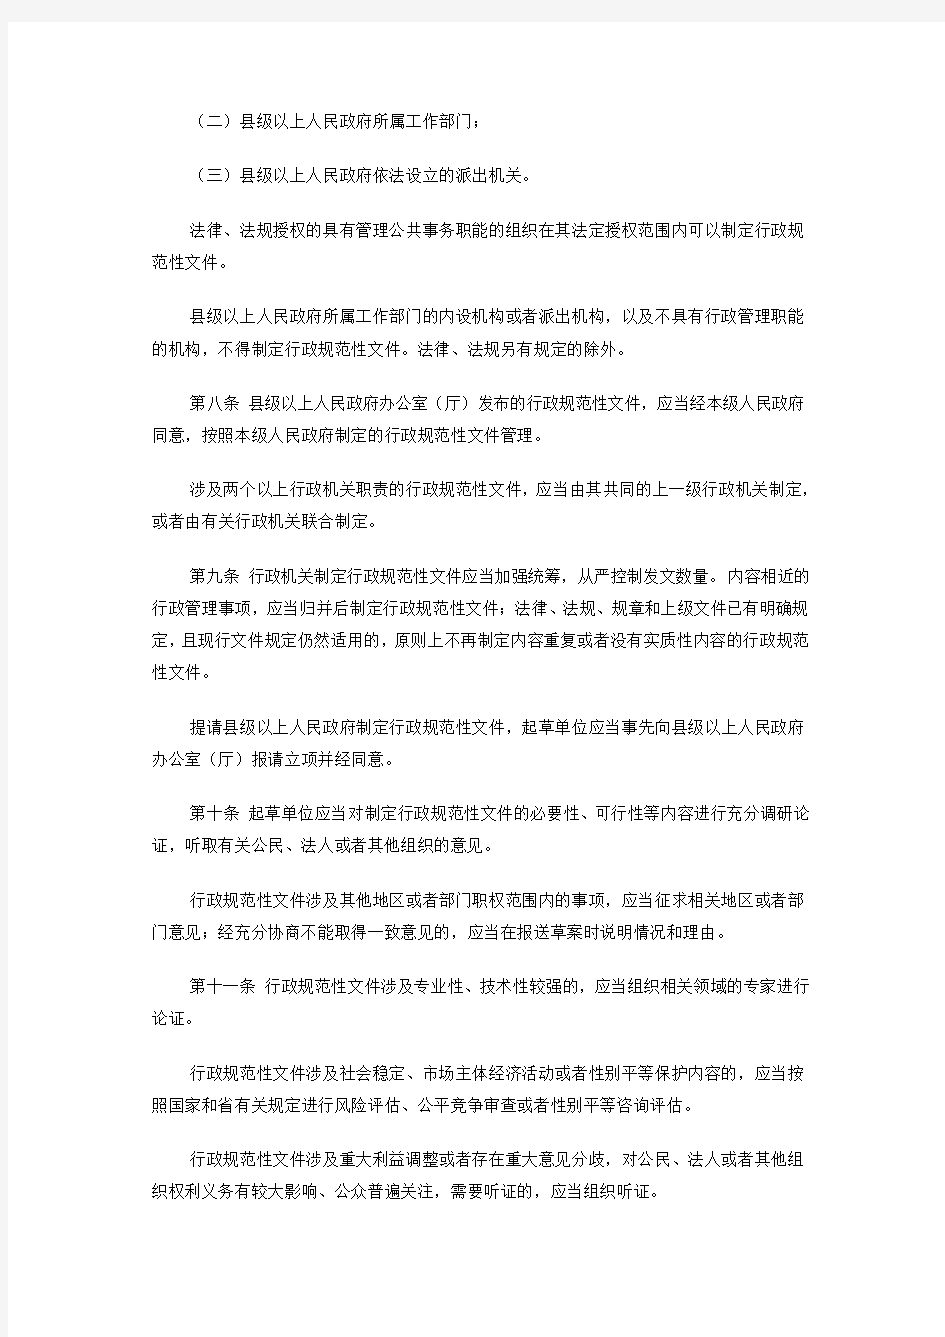 浙江省行政规范性文件管理办法